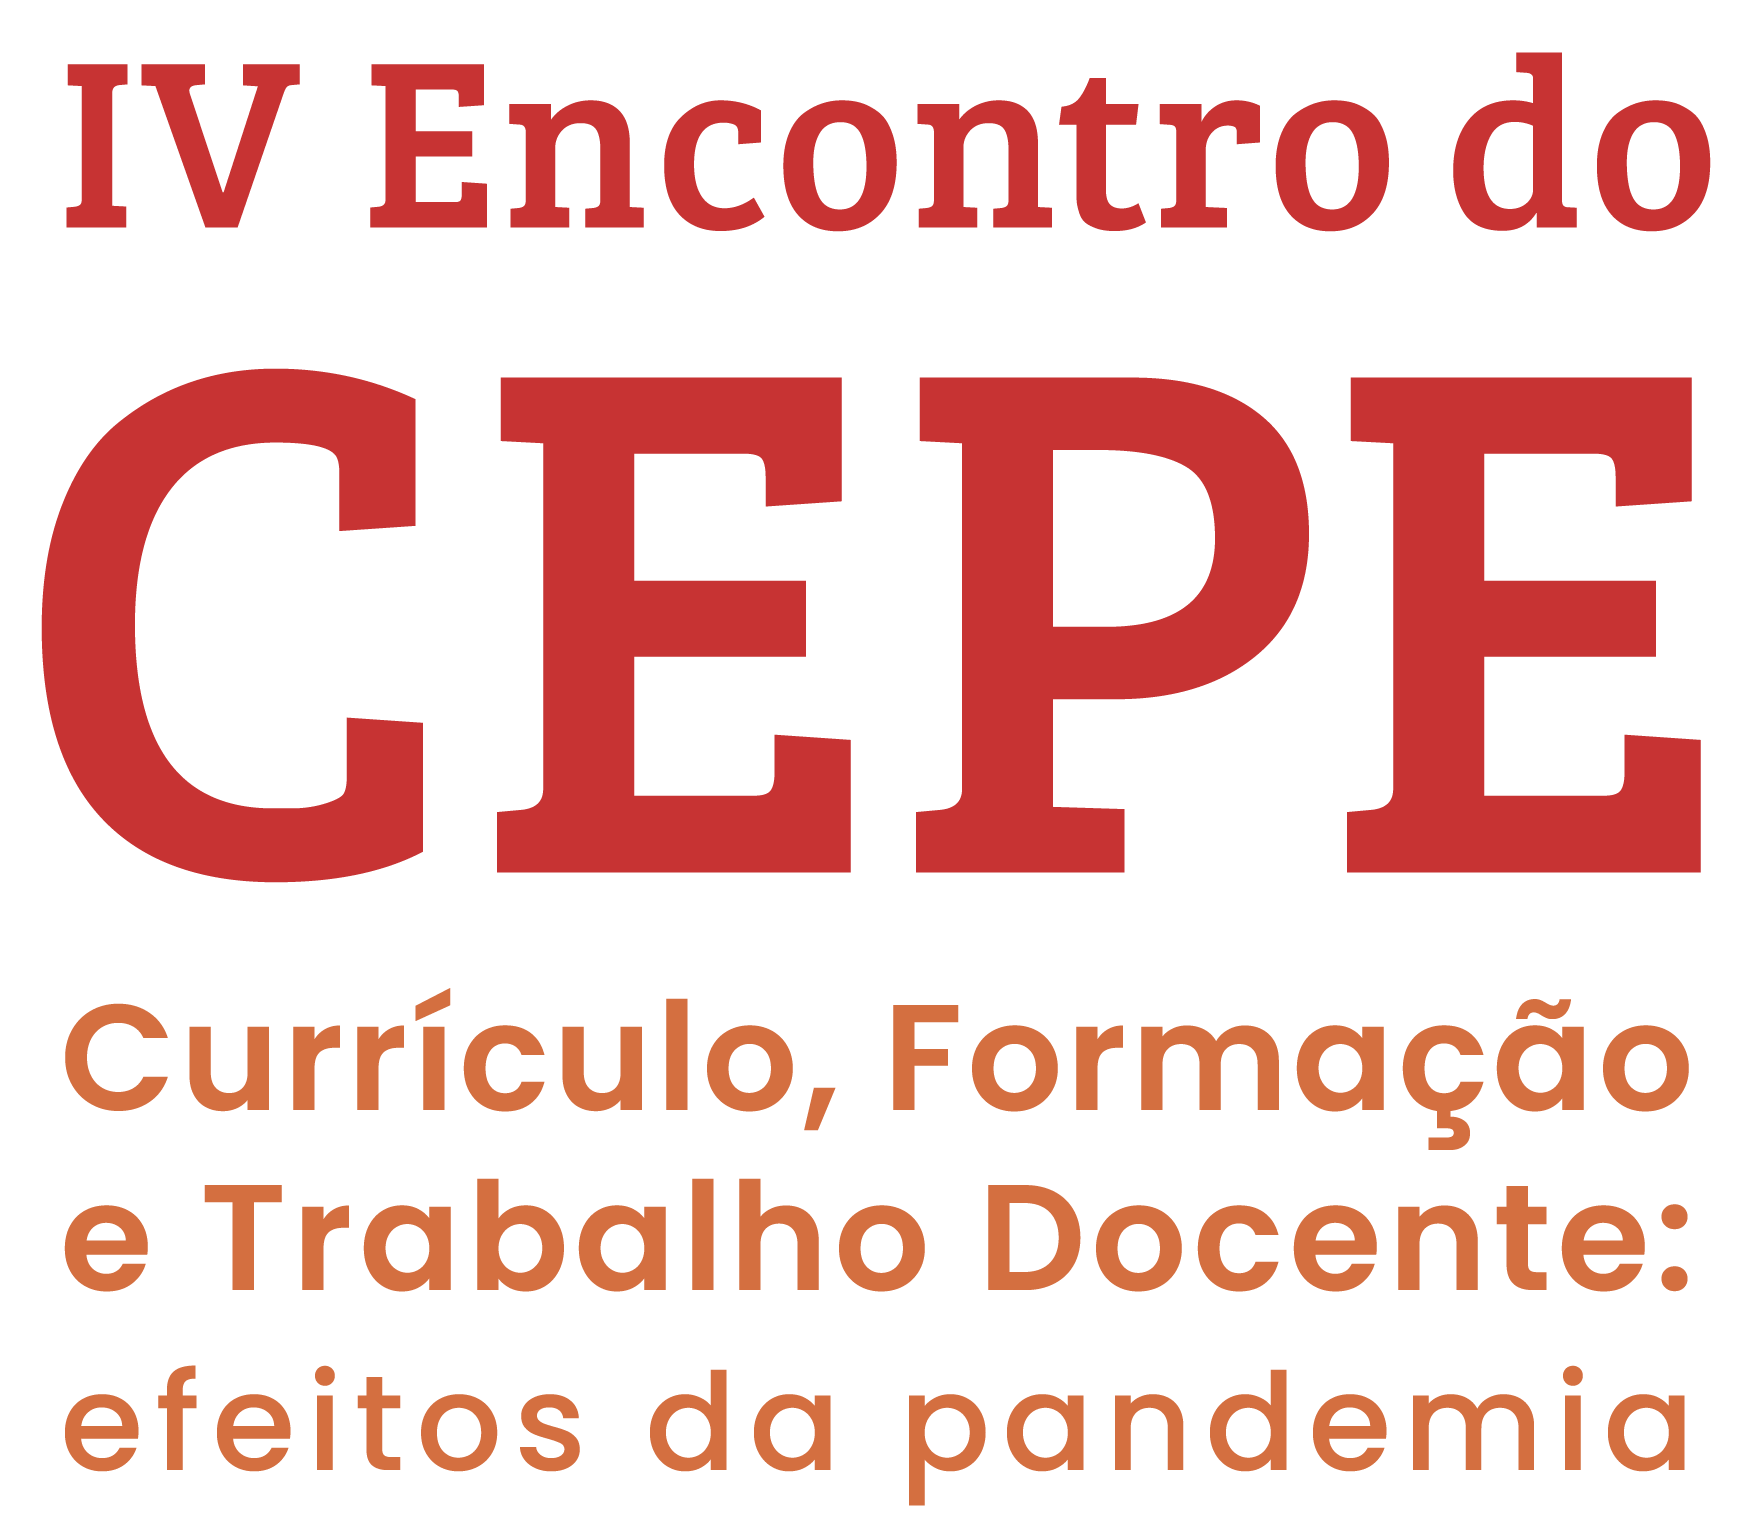 Logo IV Encontro do CEPE